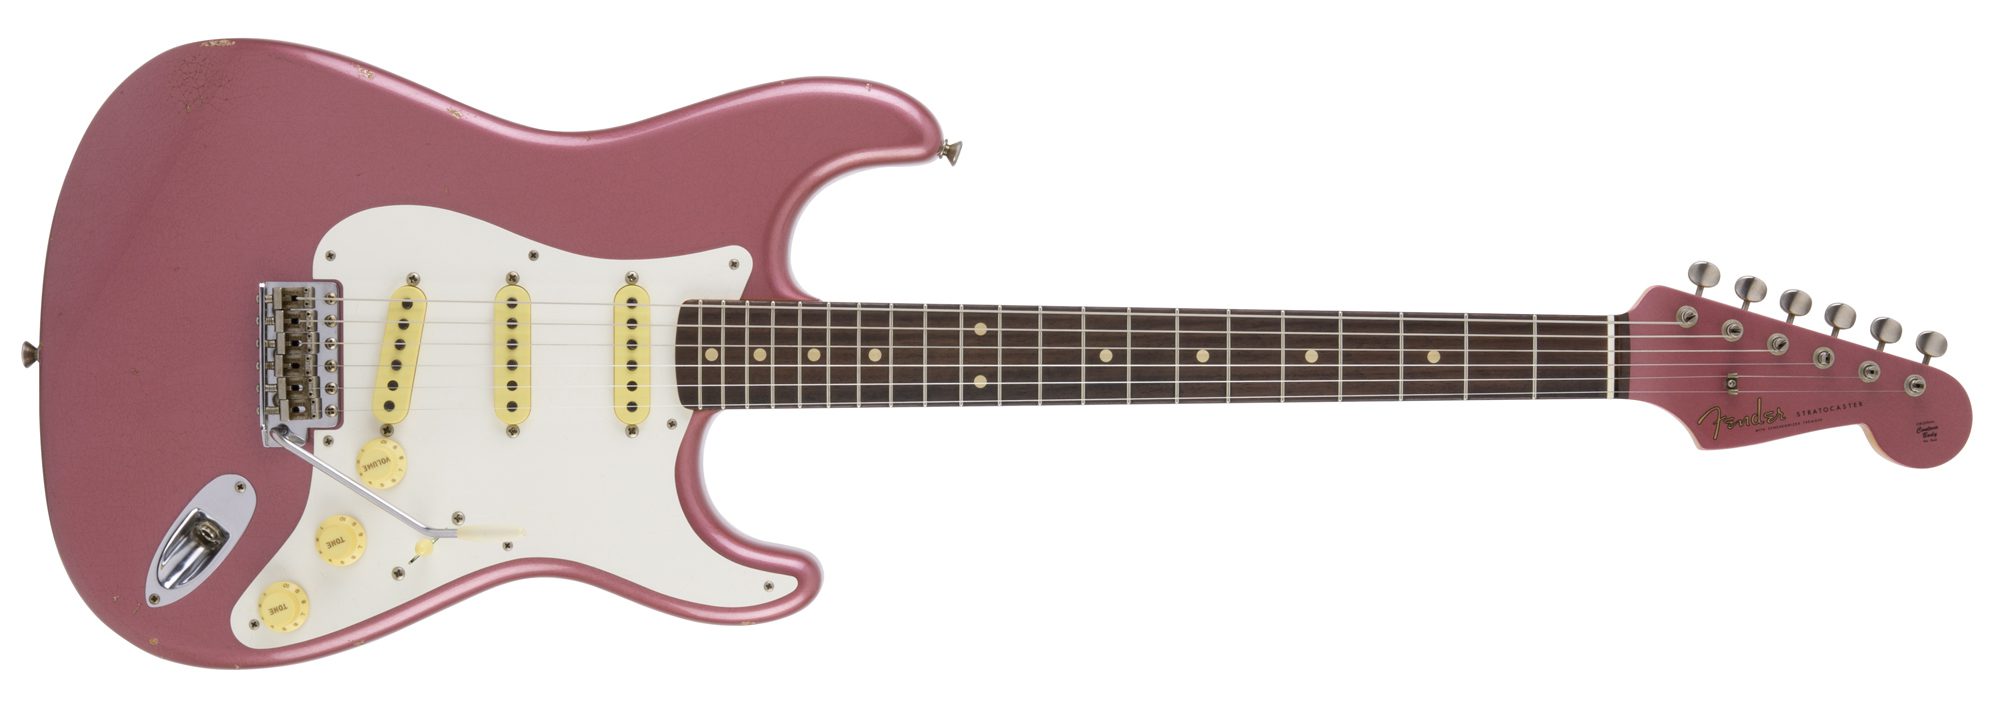 Fender】ギタリストCharのキャリアの中でも特別な存在感を放つ1959年製 